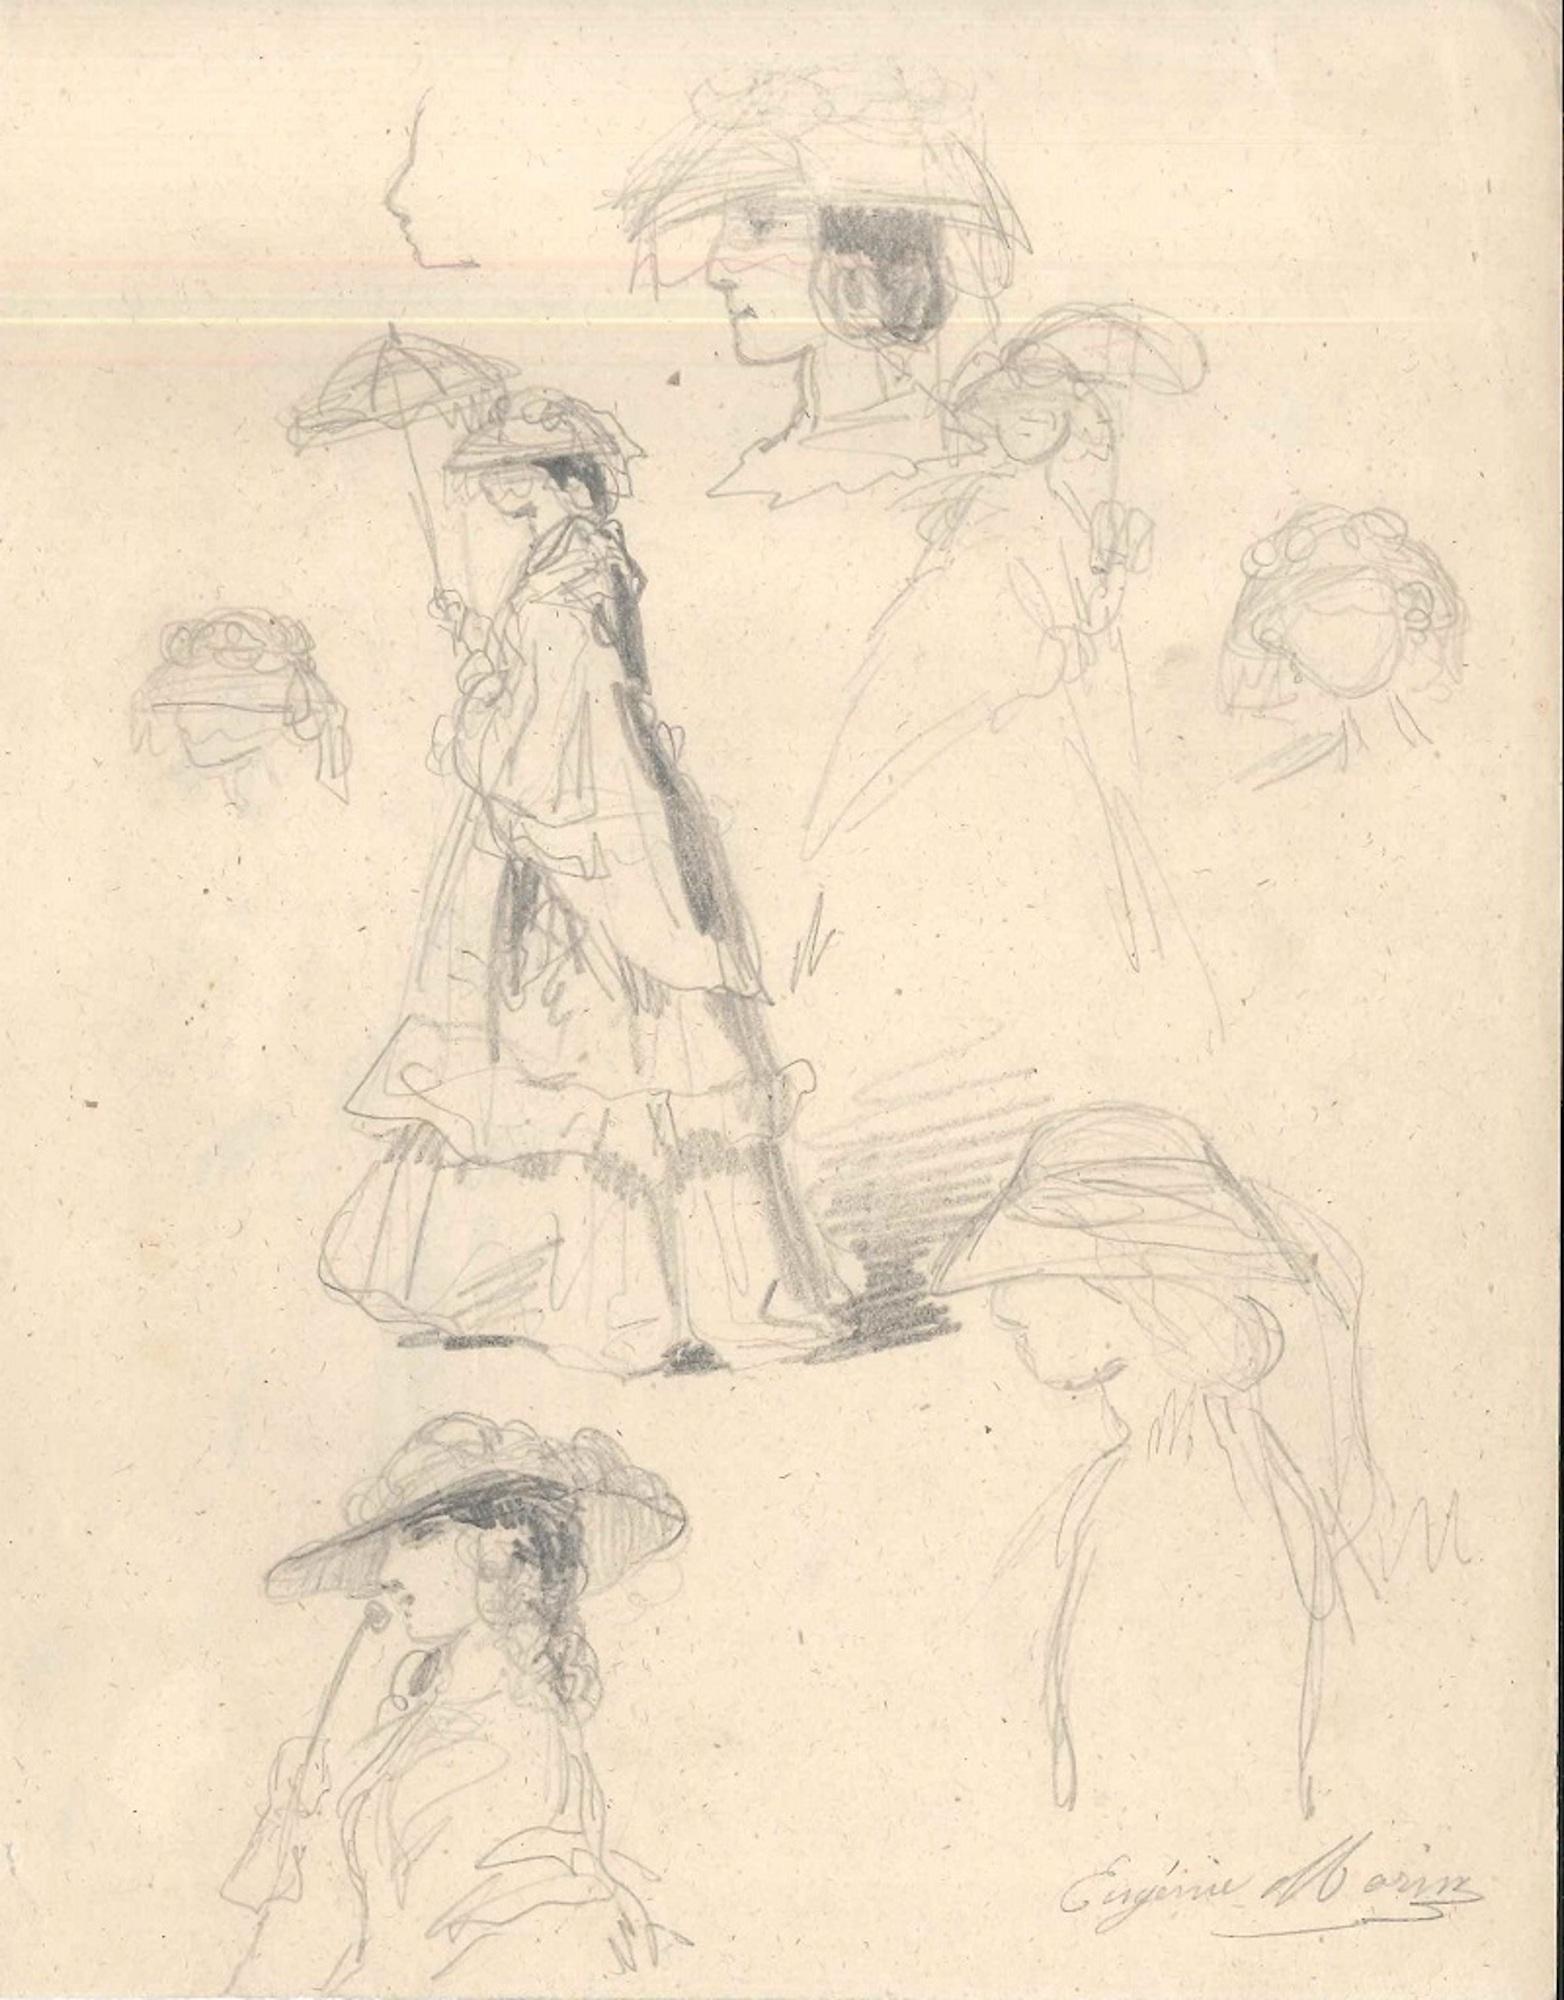 Femme à la mode - Dessin original au crayon par E. Morin - Milieu du XIXe siècle